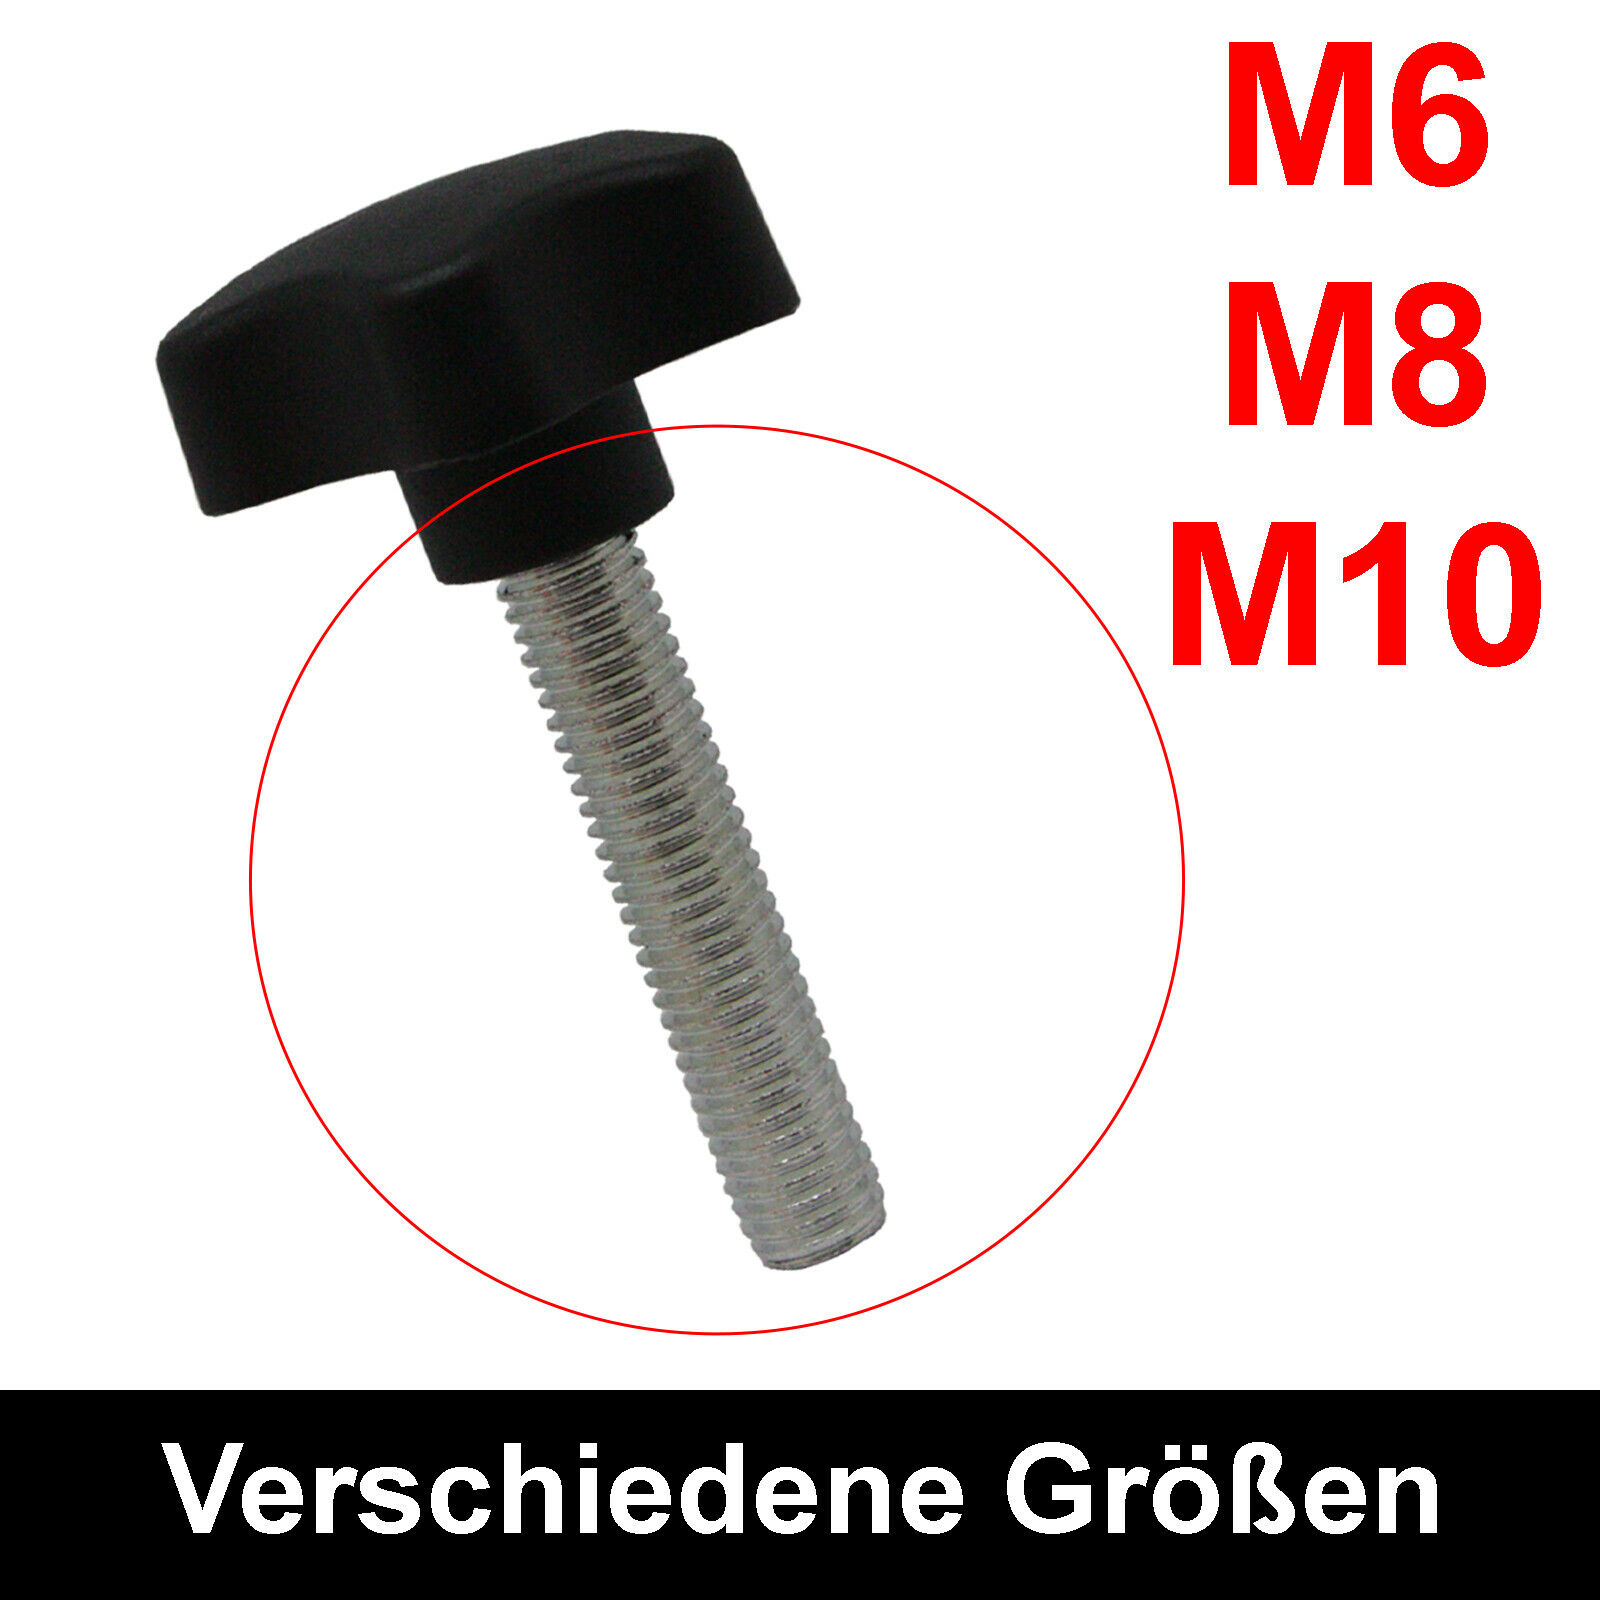 DE 10 Stk Sterngriffmutter Feststellmutter Sterngriff Klemmschraube M6 M8 M10 